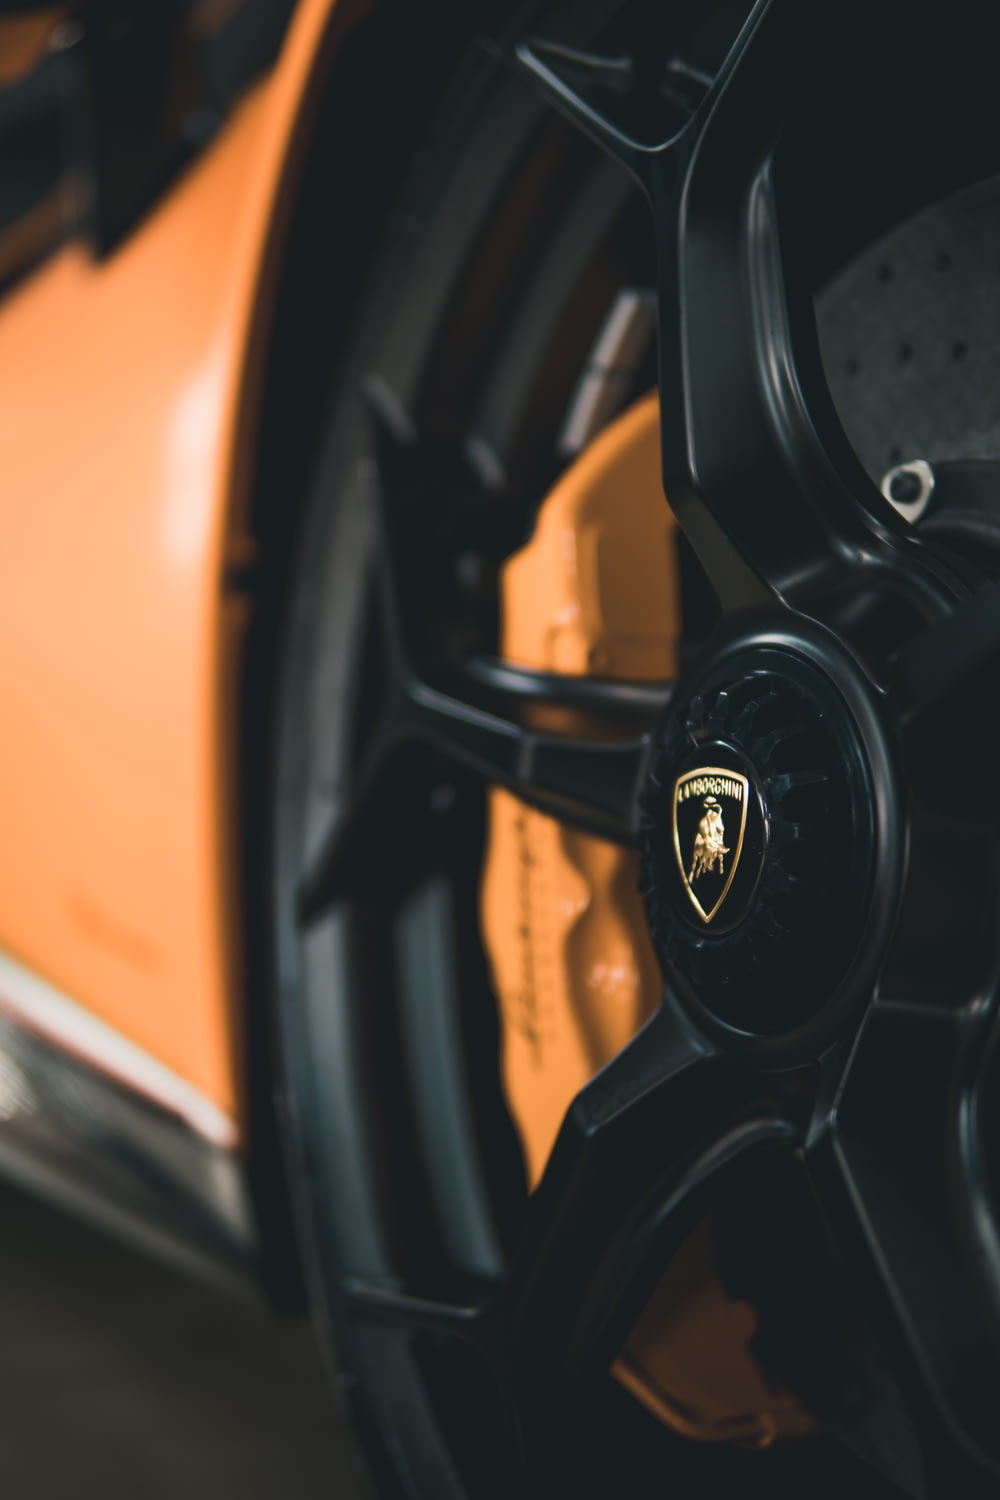 um close up de uma roda em um carro esportivo